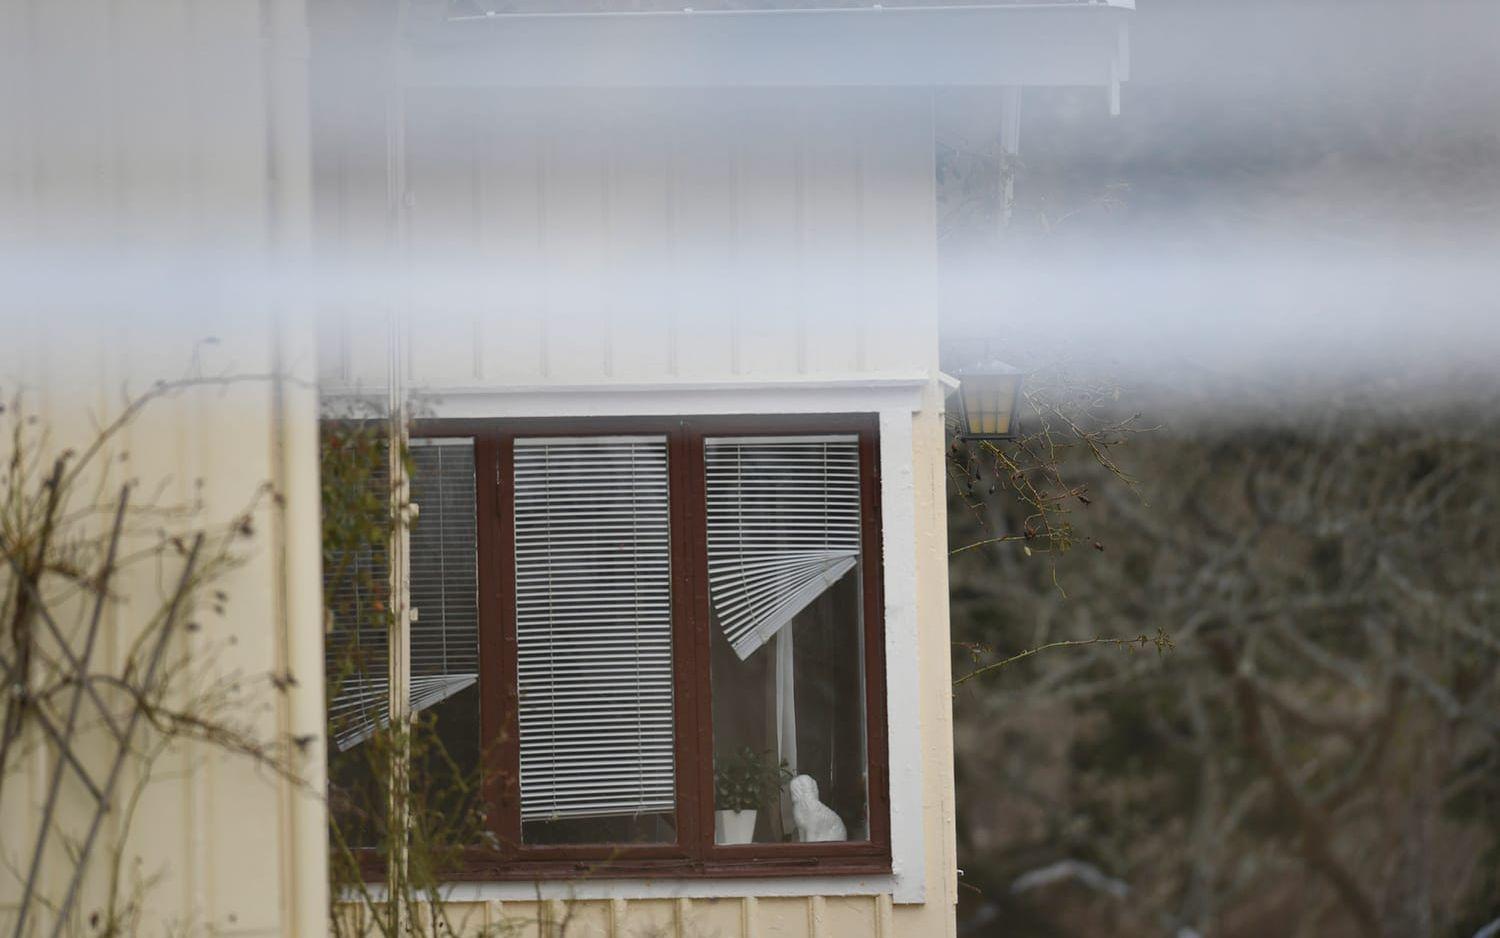 En kvinna hittades död i ett hus i Kungsbacka under tisdagseftermiddagen. Under natten mot onsdag anhölls en annan kvinna misstänkt för mord. FOTO: Robin Aron